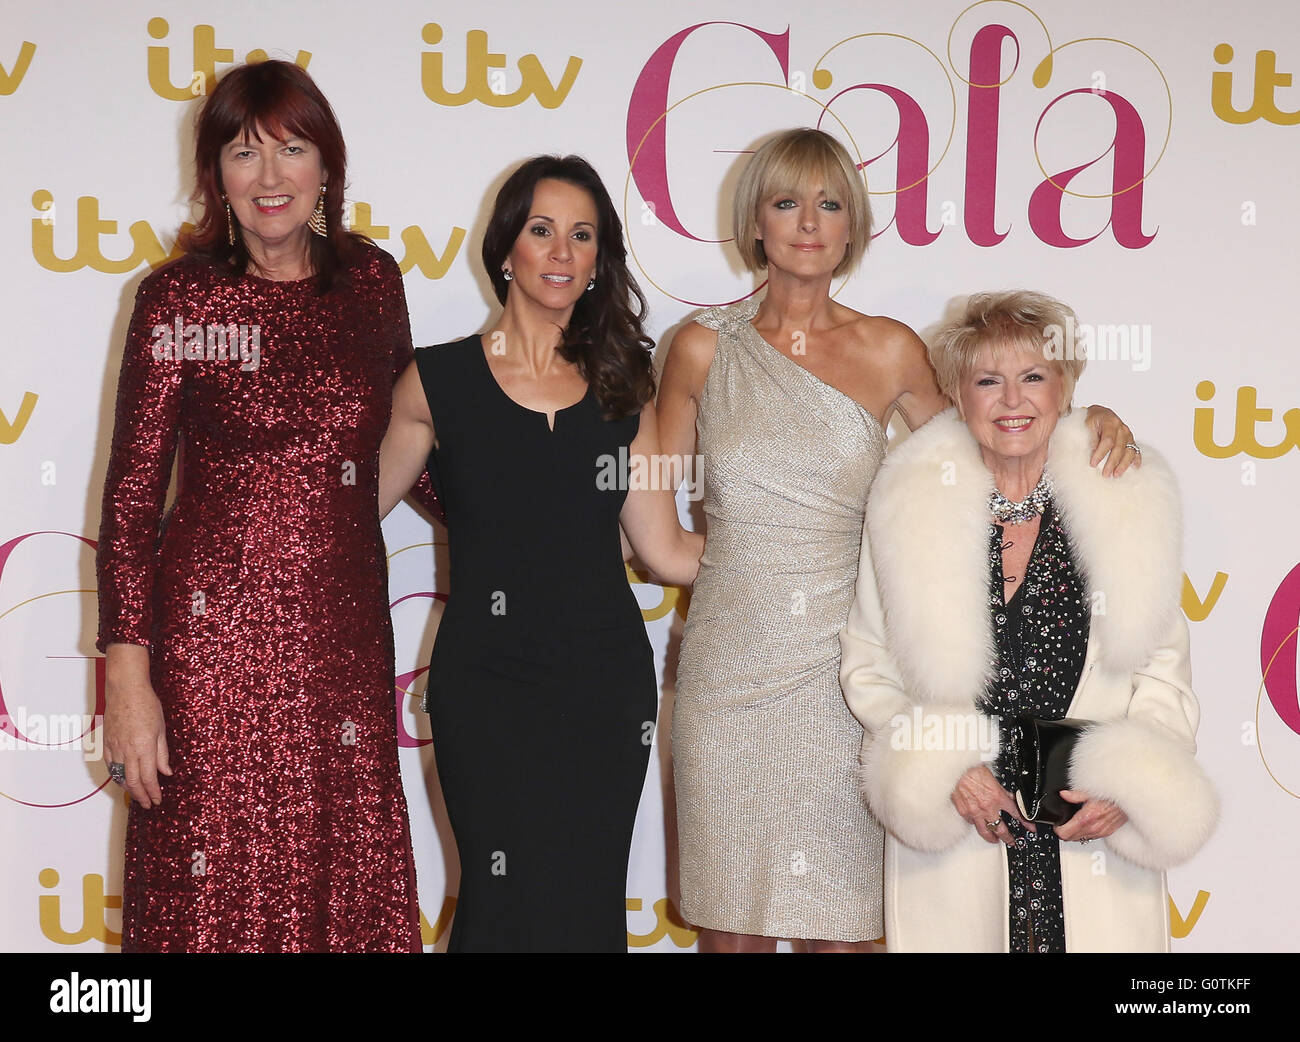 Londra, UK, 19 Nov 2015: Andrea McLean, Janet Street-Porter, Gloria Hunniford e Jane Moore - allentato Le donne frequentano il Gala di ITV al London Palladium di Londra Foto Stock